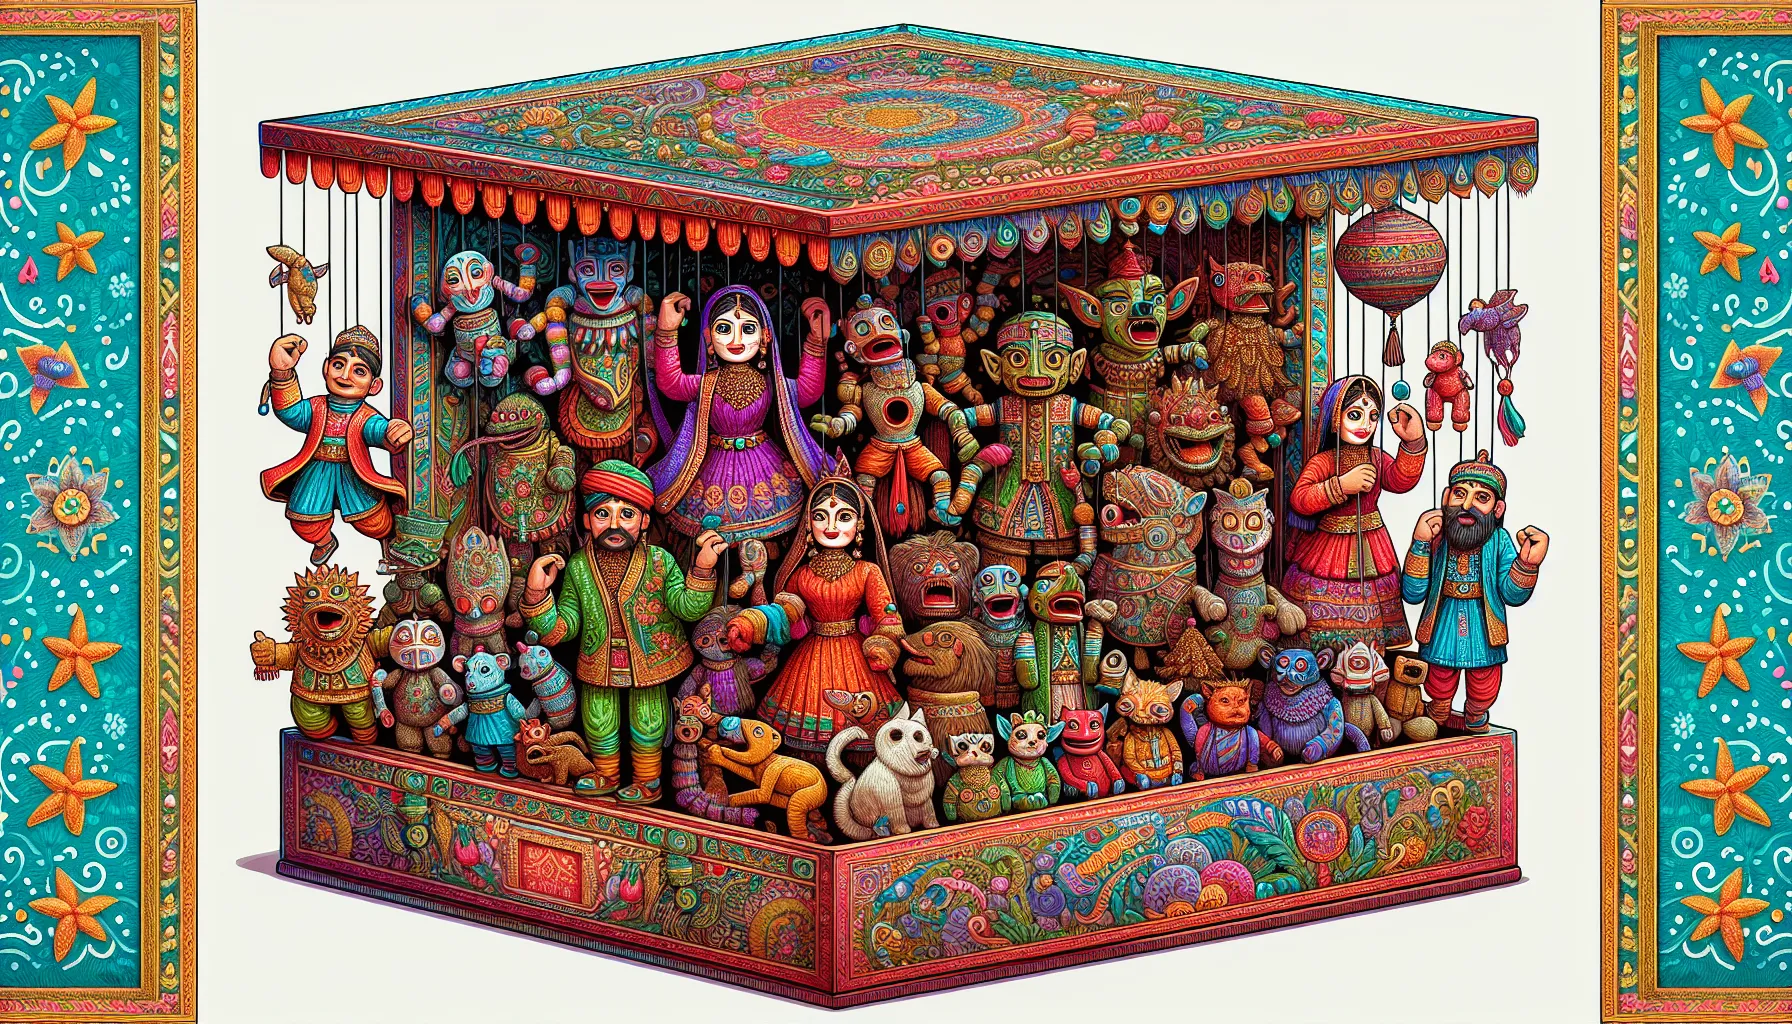 Uma caixa de fantoches é uma caixa onde são guardados e organizados os fantoches. Os fantoches são bonecos ou marionetes que são usados para contar histórias ou encenar peças teatrais. A caixa de fantoches é uma forma prática de armazenar e transportar os fantoches, mantendo-os protegidos e organizados. Ela geralmente possui compartimentos separados para cada fanto